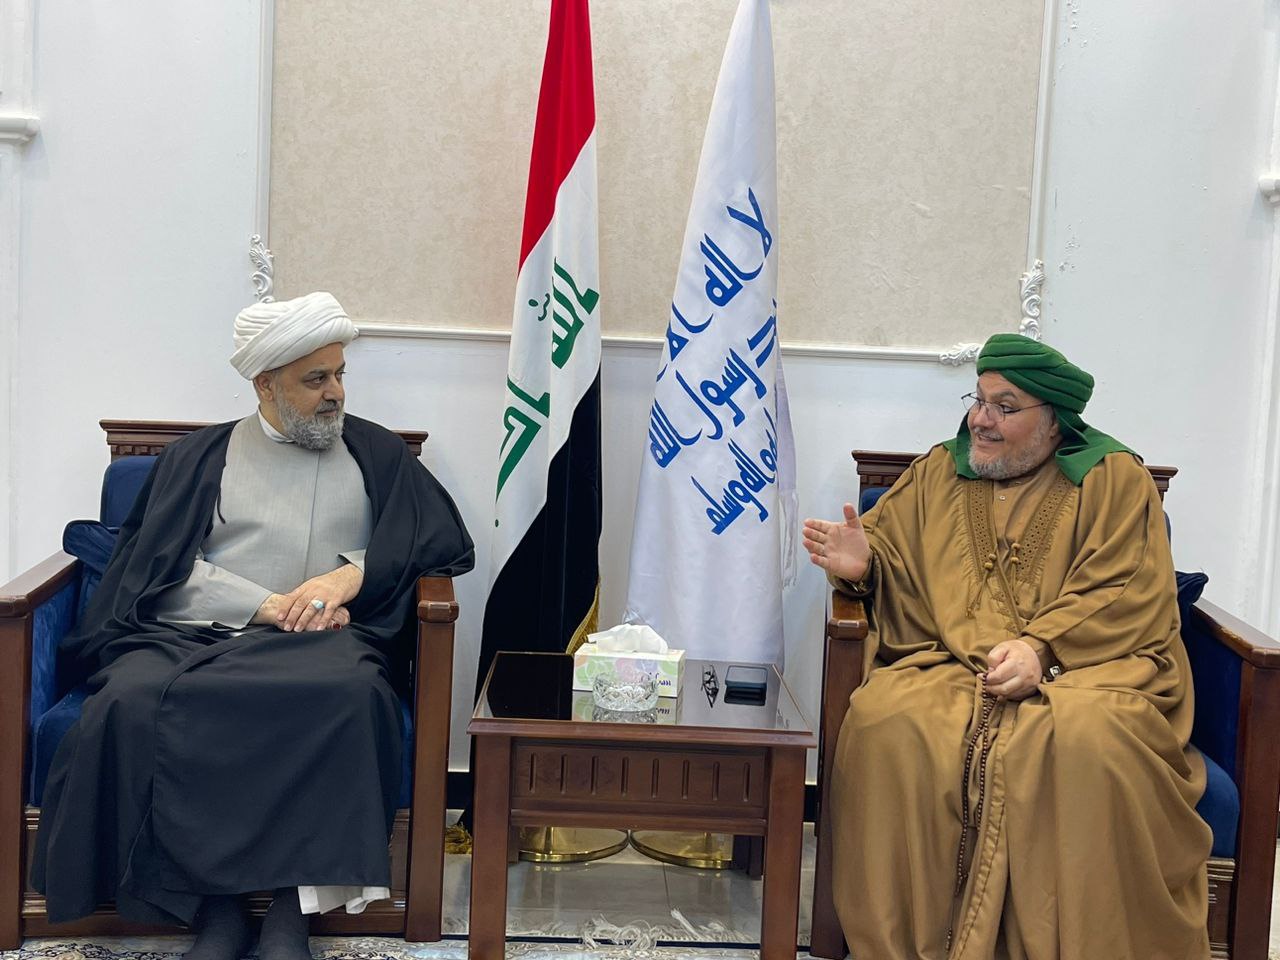 الدكتور شهرياري يجري مباحثات مع رئيس مجلس علماء الرباط المحمدي في العراق